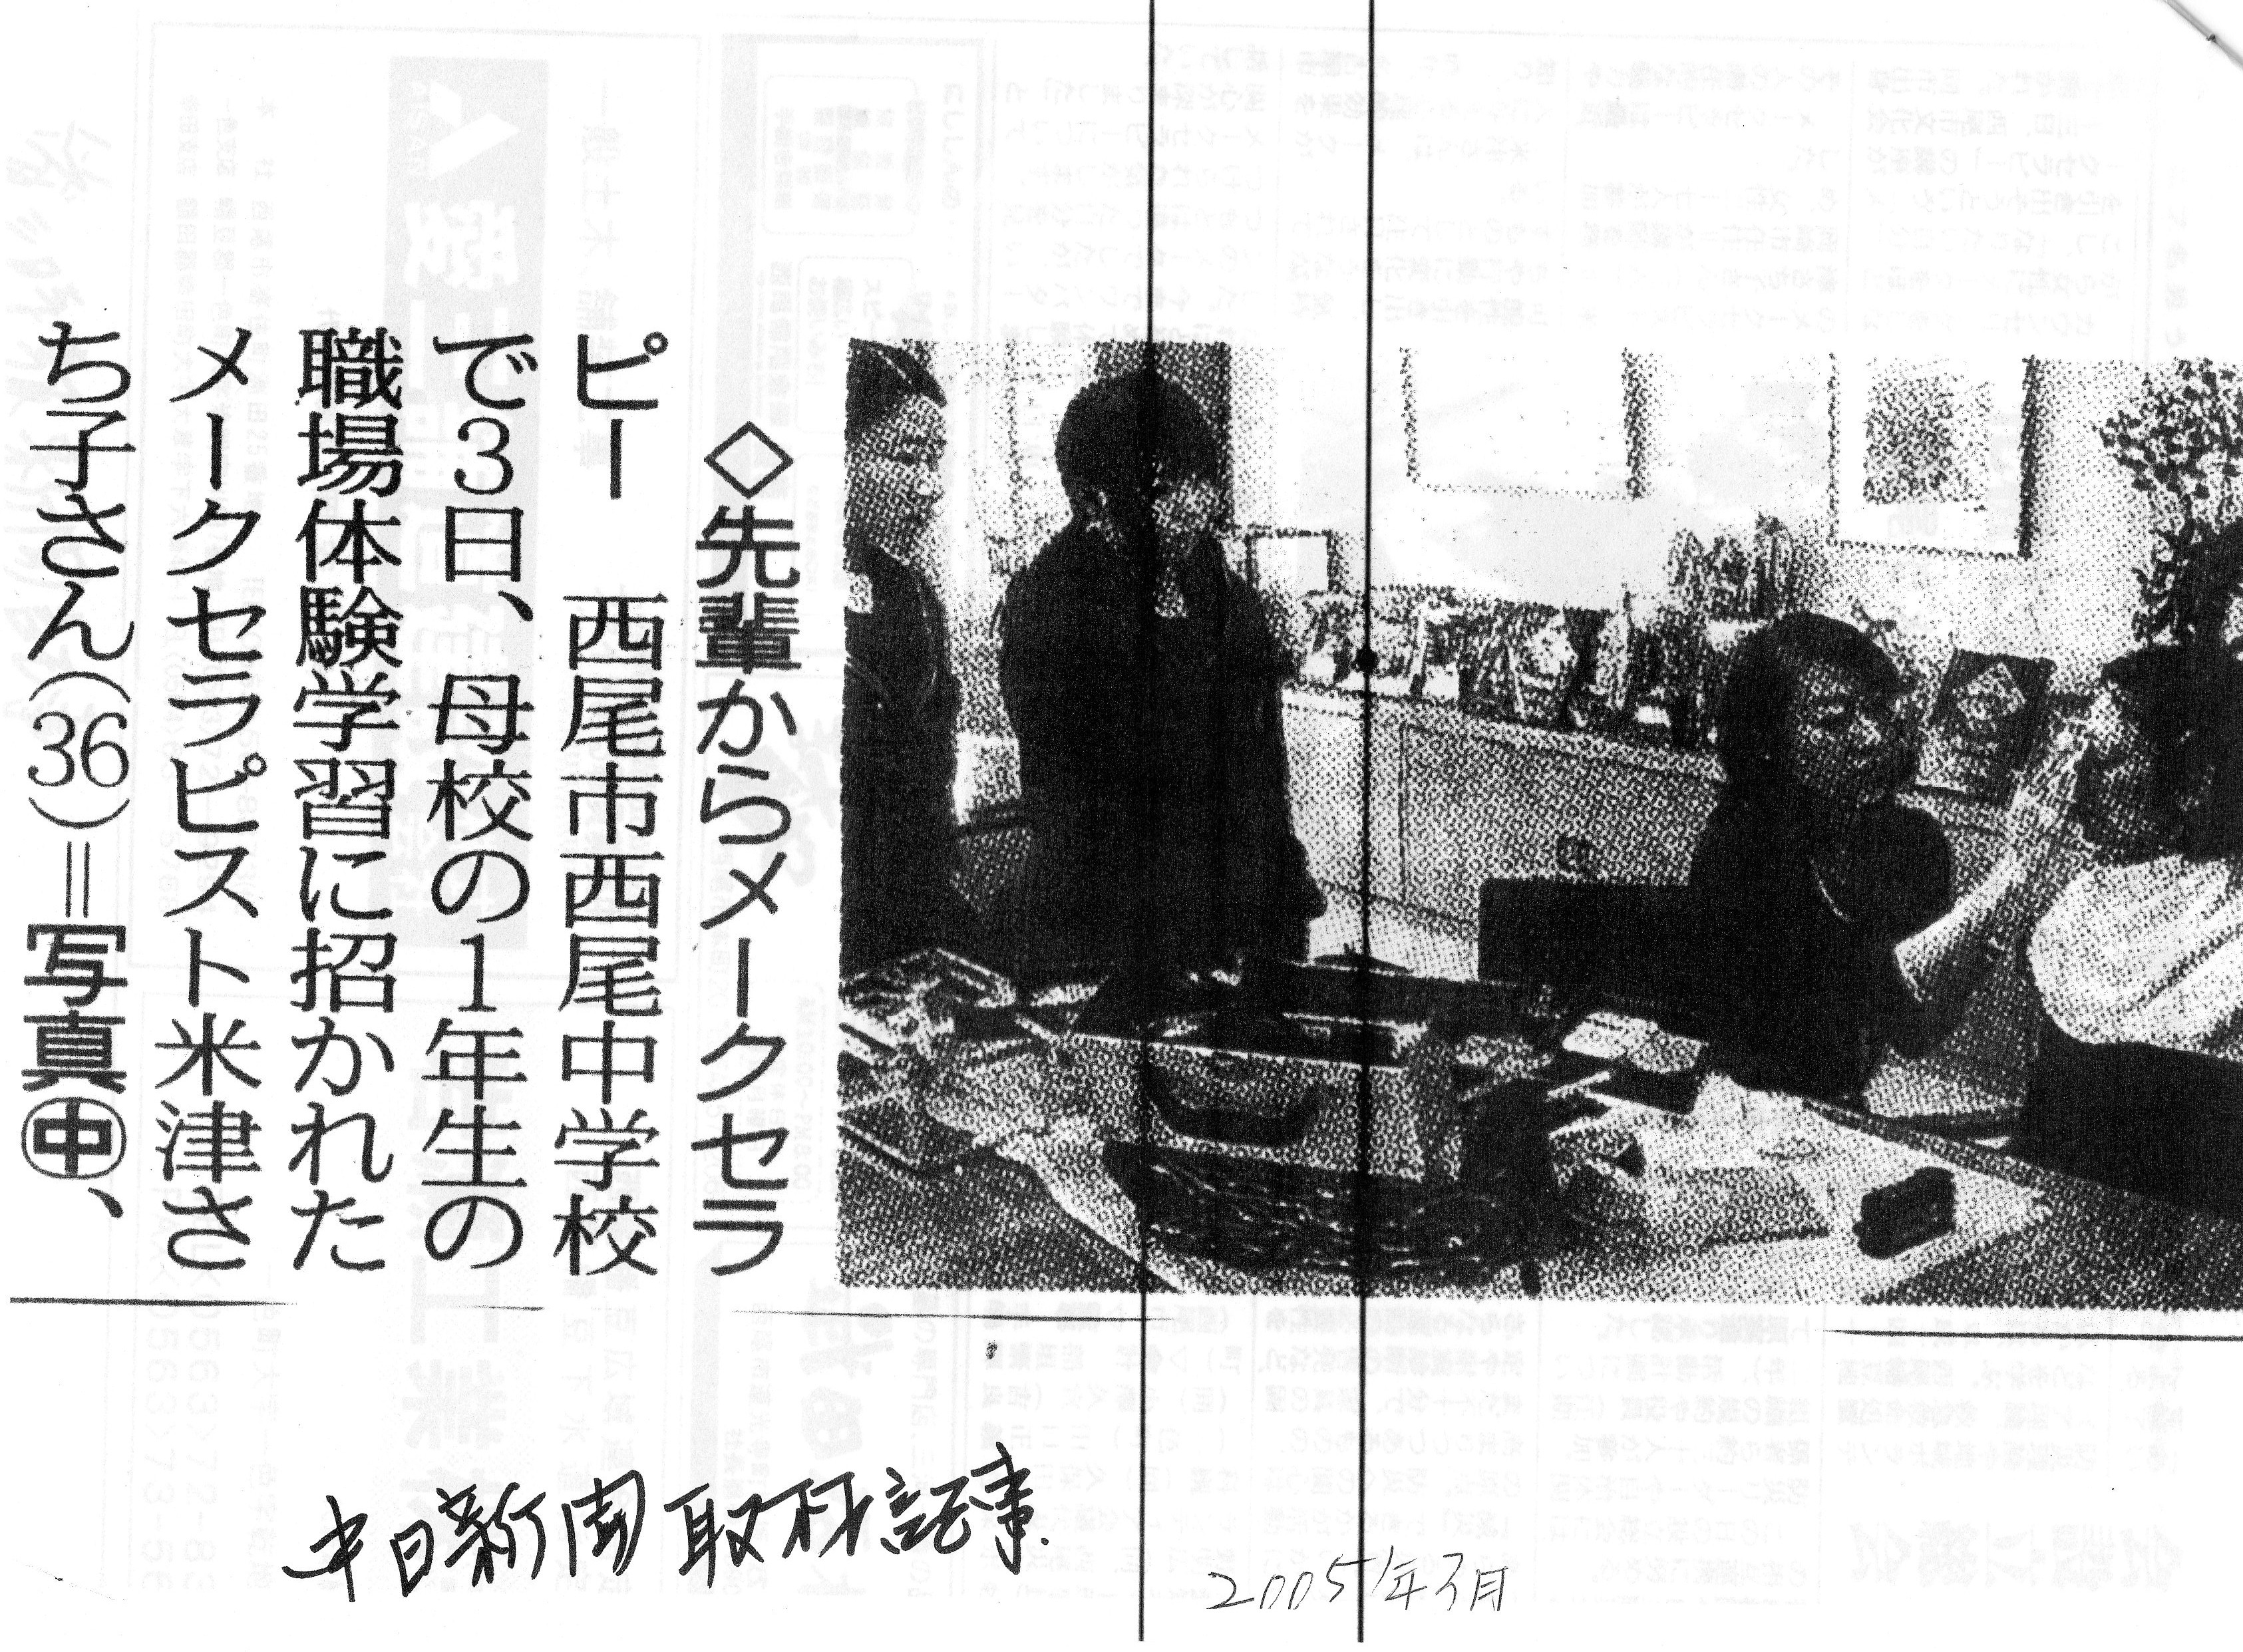 中日新聞「西尾中学校（母校）職場体験に訪問」取材記事